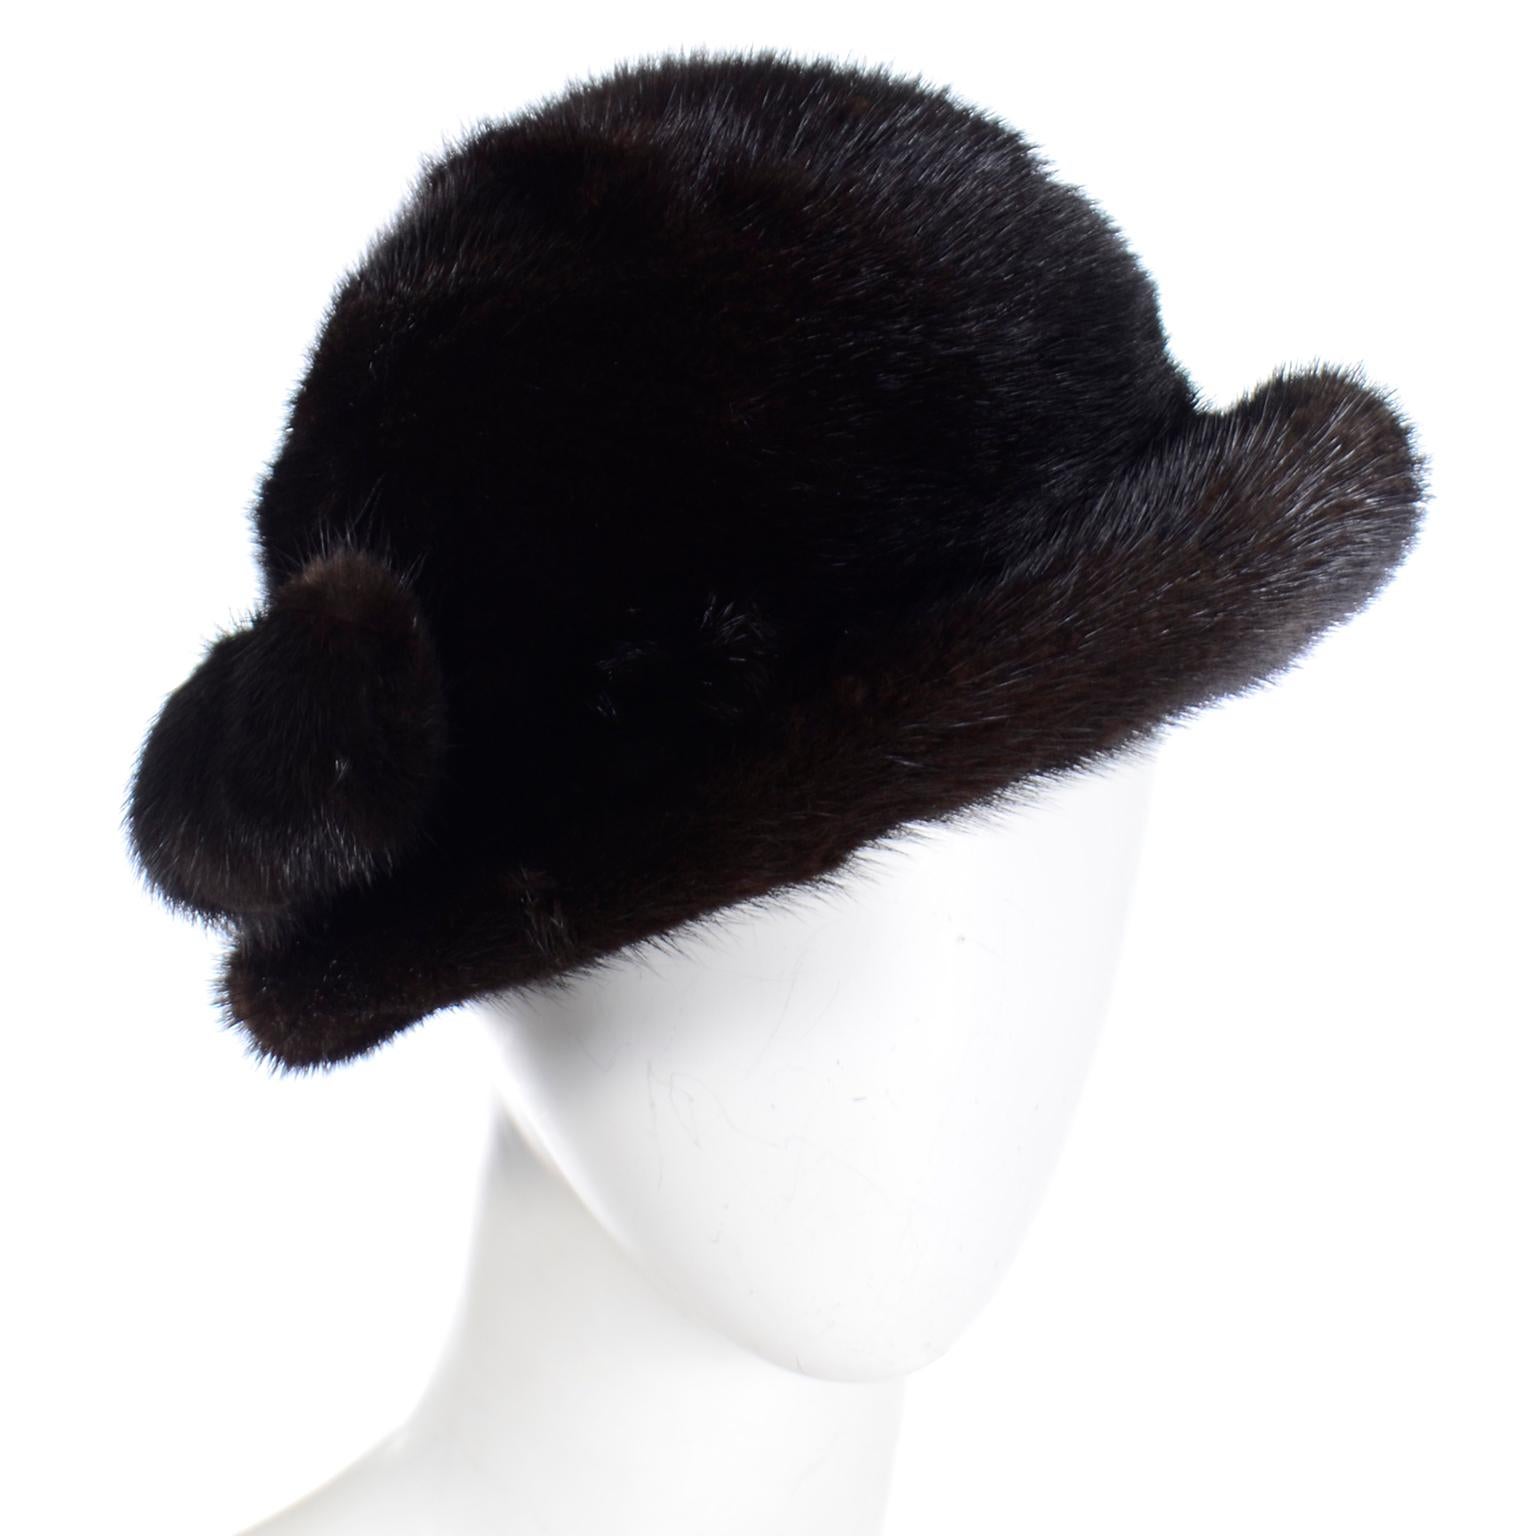 Il s'agit d'un chapeau vintage de luxe en vison Andre avec une jolie doublure en satin noir et une paire de pompons en vison. Ce chapeau à bord retourné a été fabriqué au Canada et mesure 21 pouces de circonférence à l'intérieur et 7 pouces de